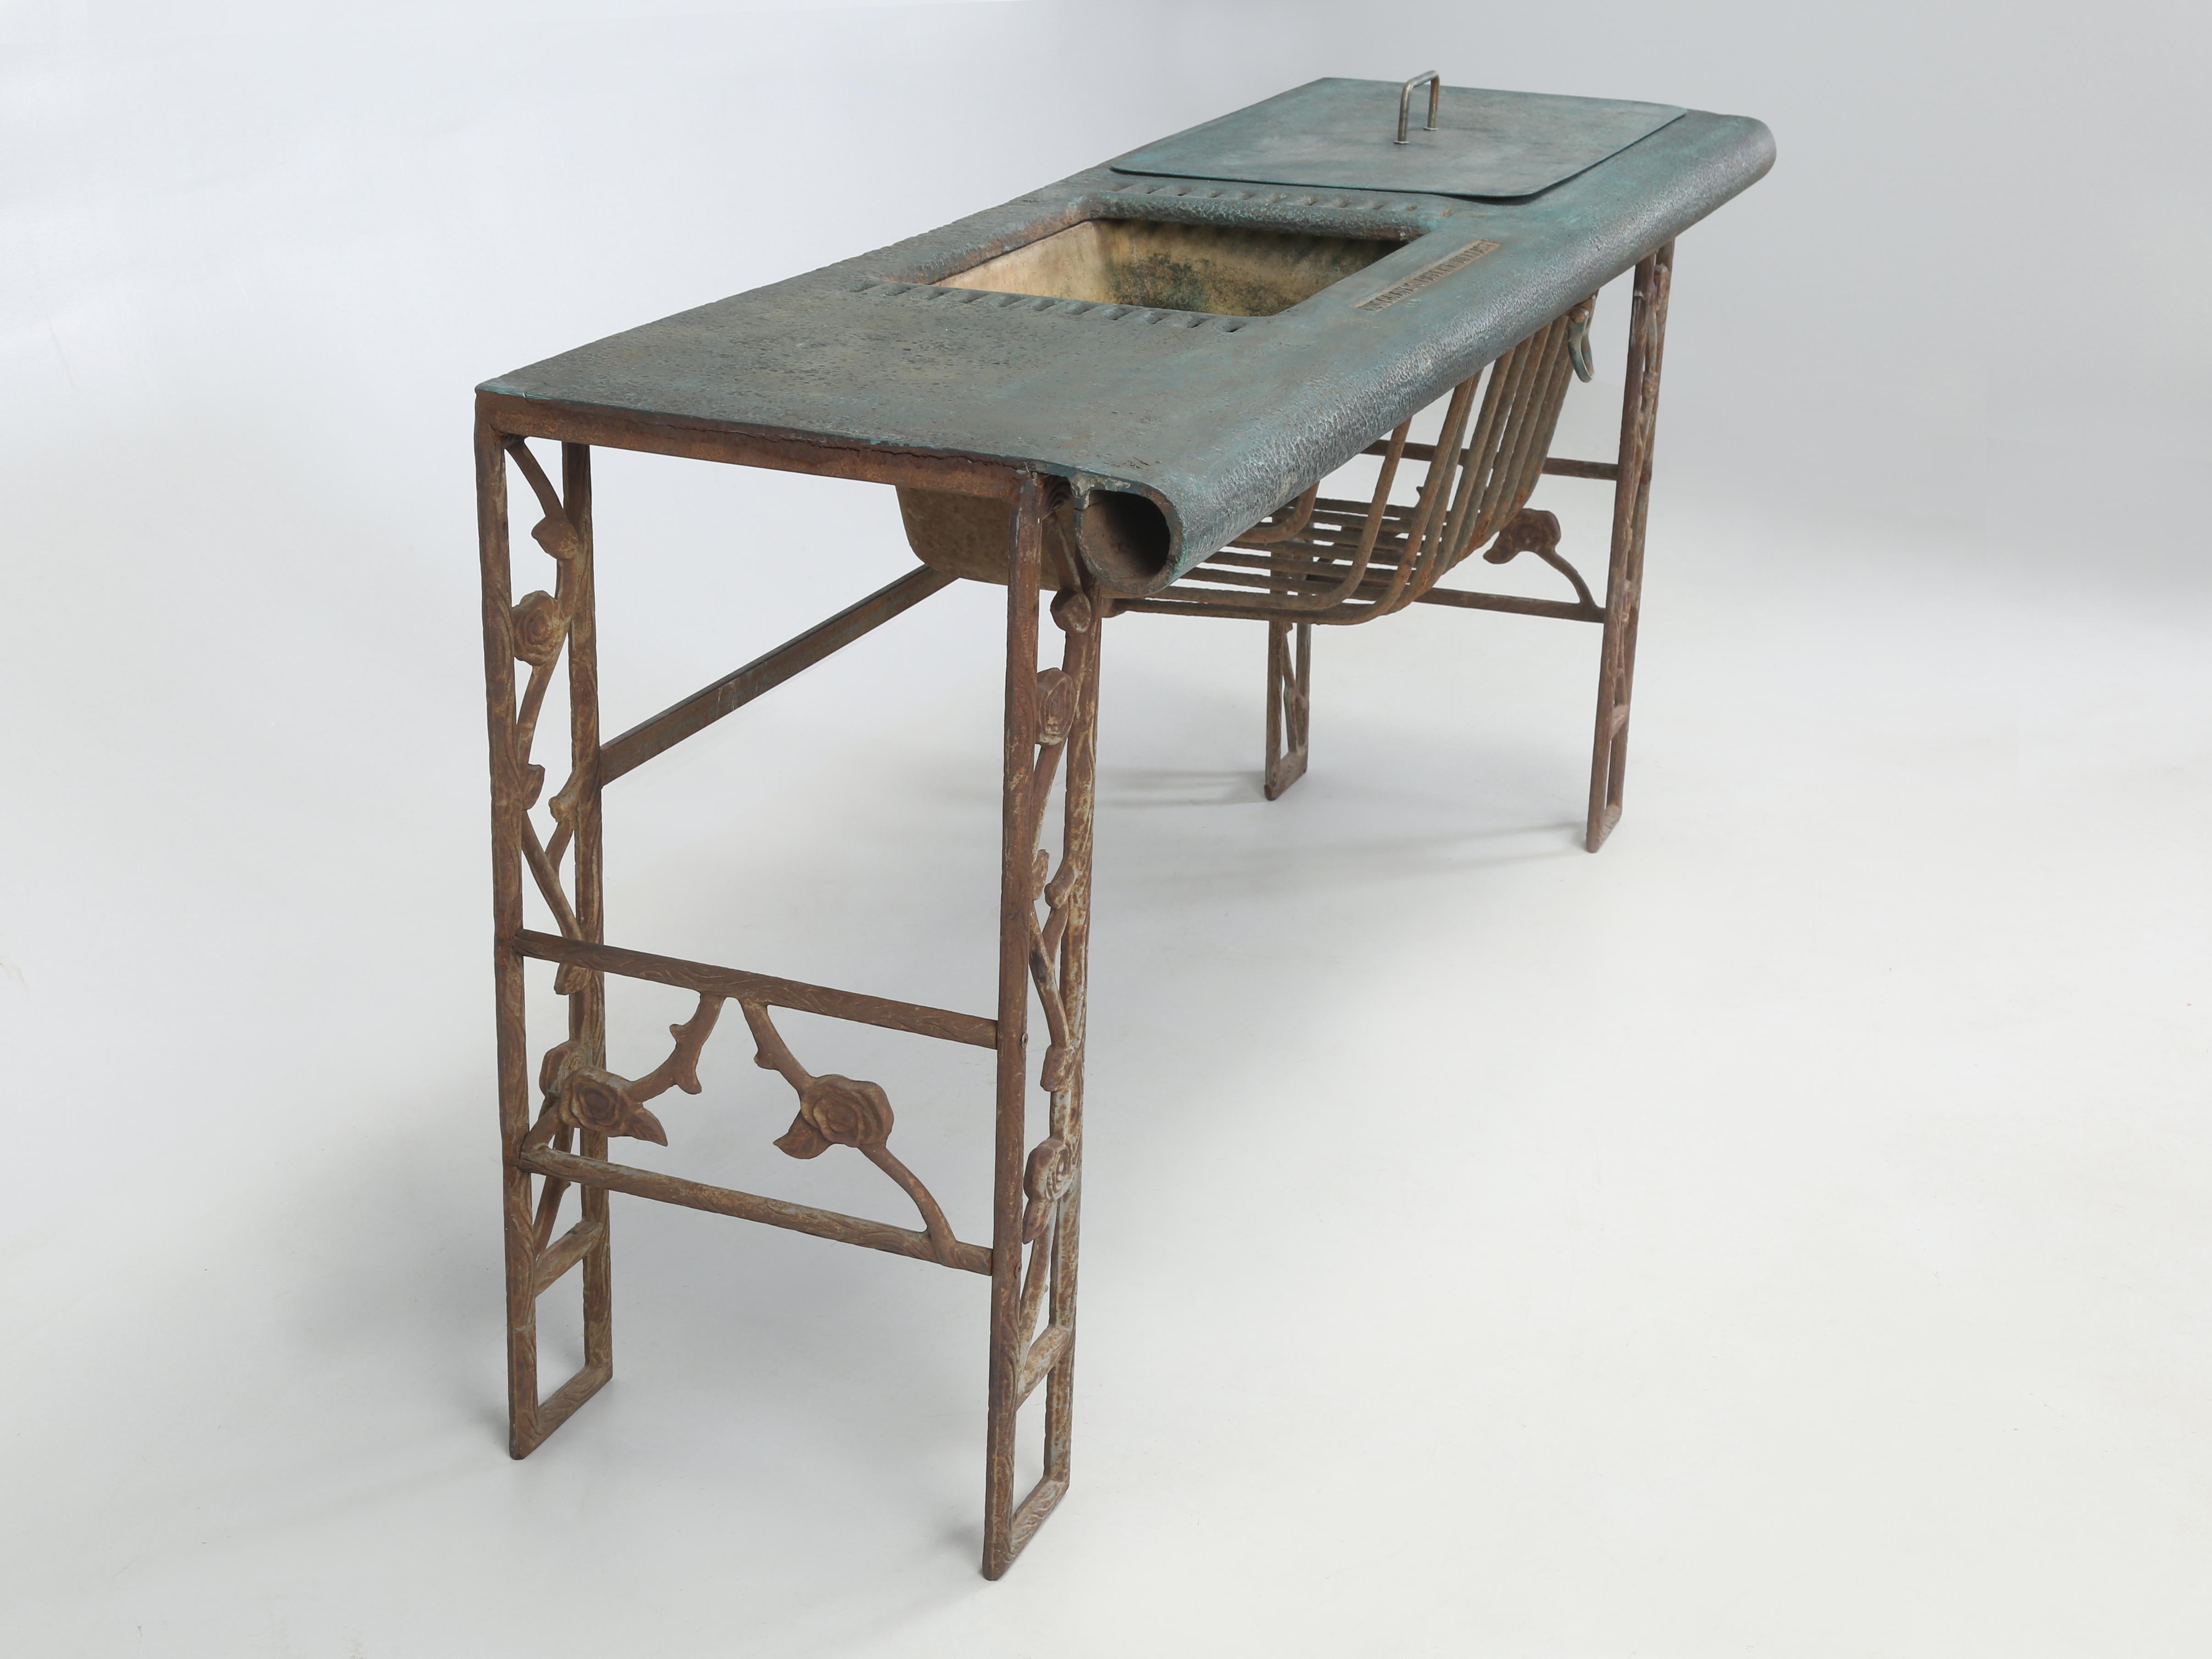 Par définition, cette incroyable table serait appelée un ; raccord d'écurie en fonte fabriqué par Musgrave & Co LTD. Musgrave Bros a commencé à produire à Belfast dans les années 1840 et s'est imposé comme l'une des premières usines sidérurgiques